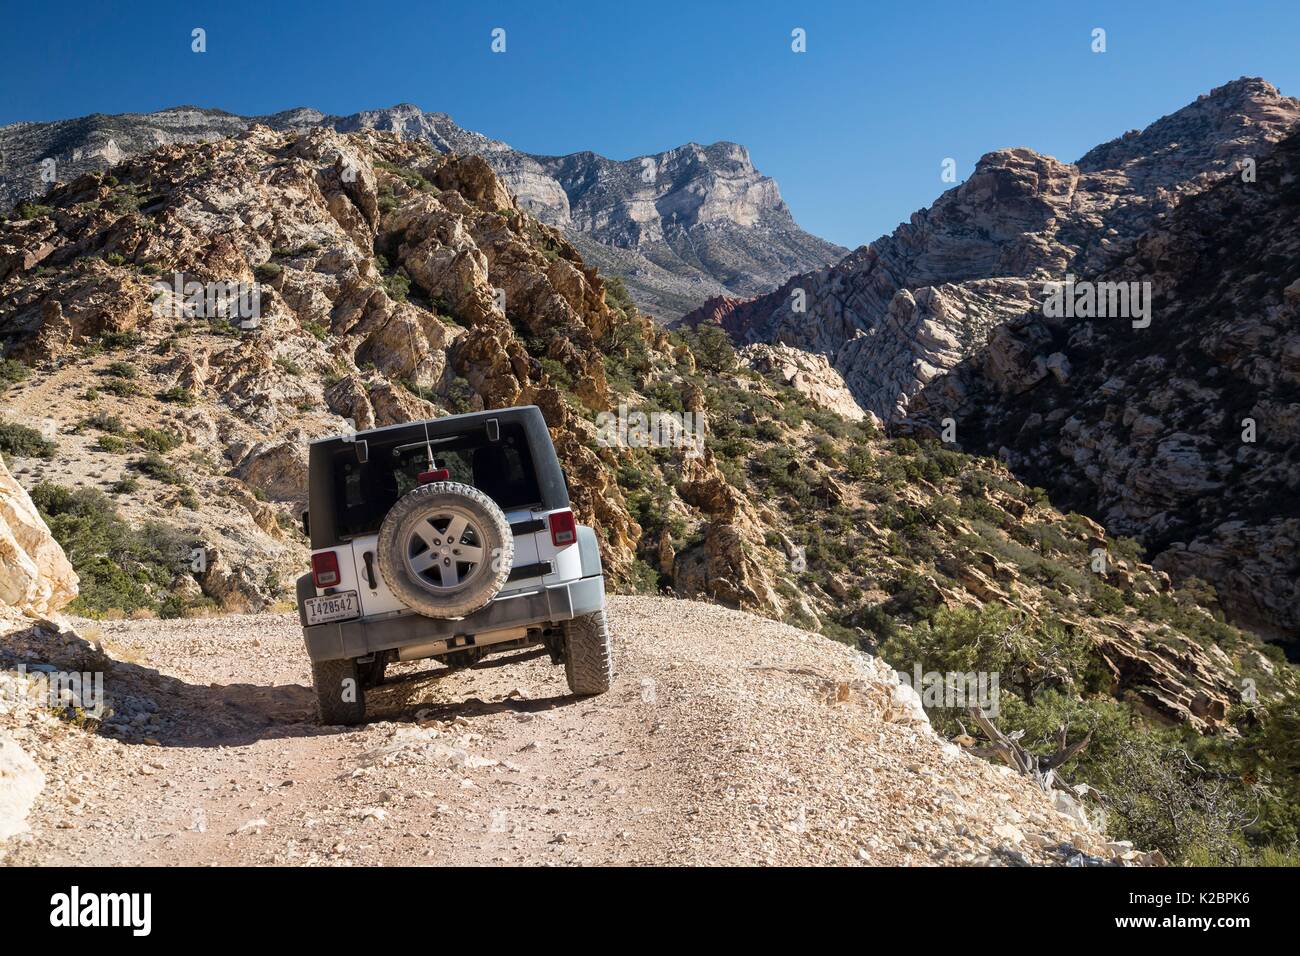 Les touristes leur voiture dans un sentier de terre pour avoir une meilleure vue sur les canyons, crêtes et sommets de montagnes qui composent le la Madre Mountain Wilderness dans le Red Rock Canyon National Conservation Area, 27 septembre 2016 près de Las Vegas, Nevada. Banque D'Images